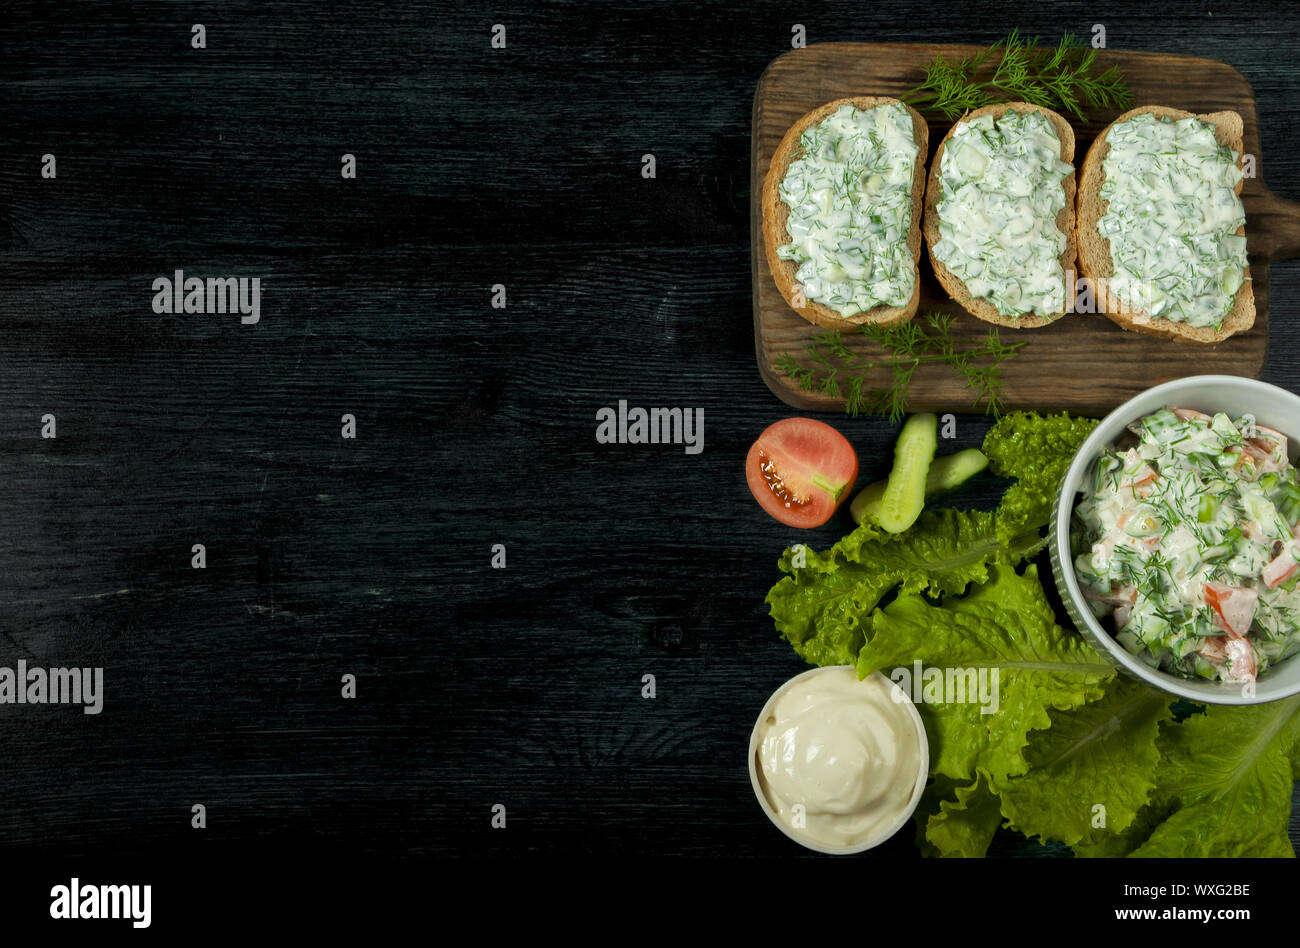 Des sandwichs avec des légumes. Des sandwichs frais avec des légumes sur une carte sur un fond texturé. Vue de dessus. Spa de copie Banque D'Images